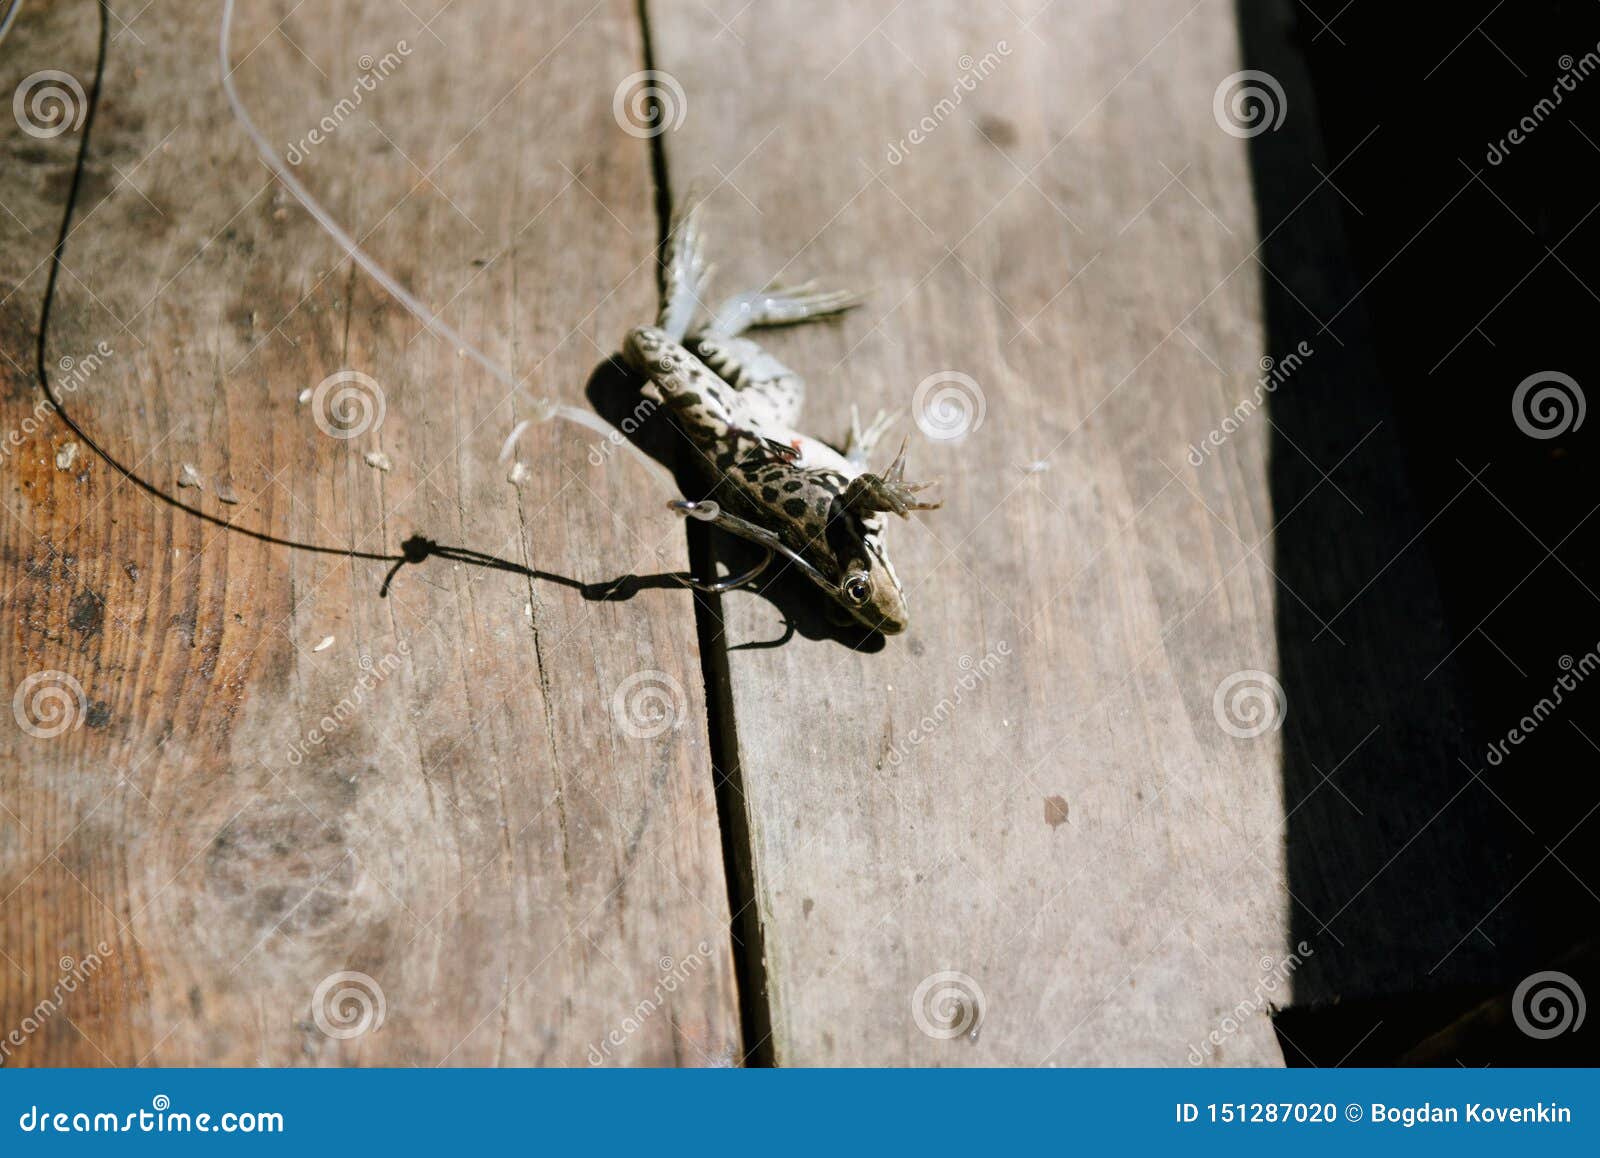 Live Frog, Impaled on a Large Fishing Hook Stock Photo - Image of